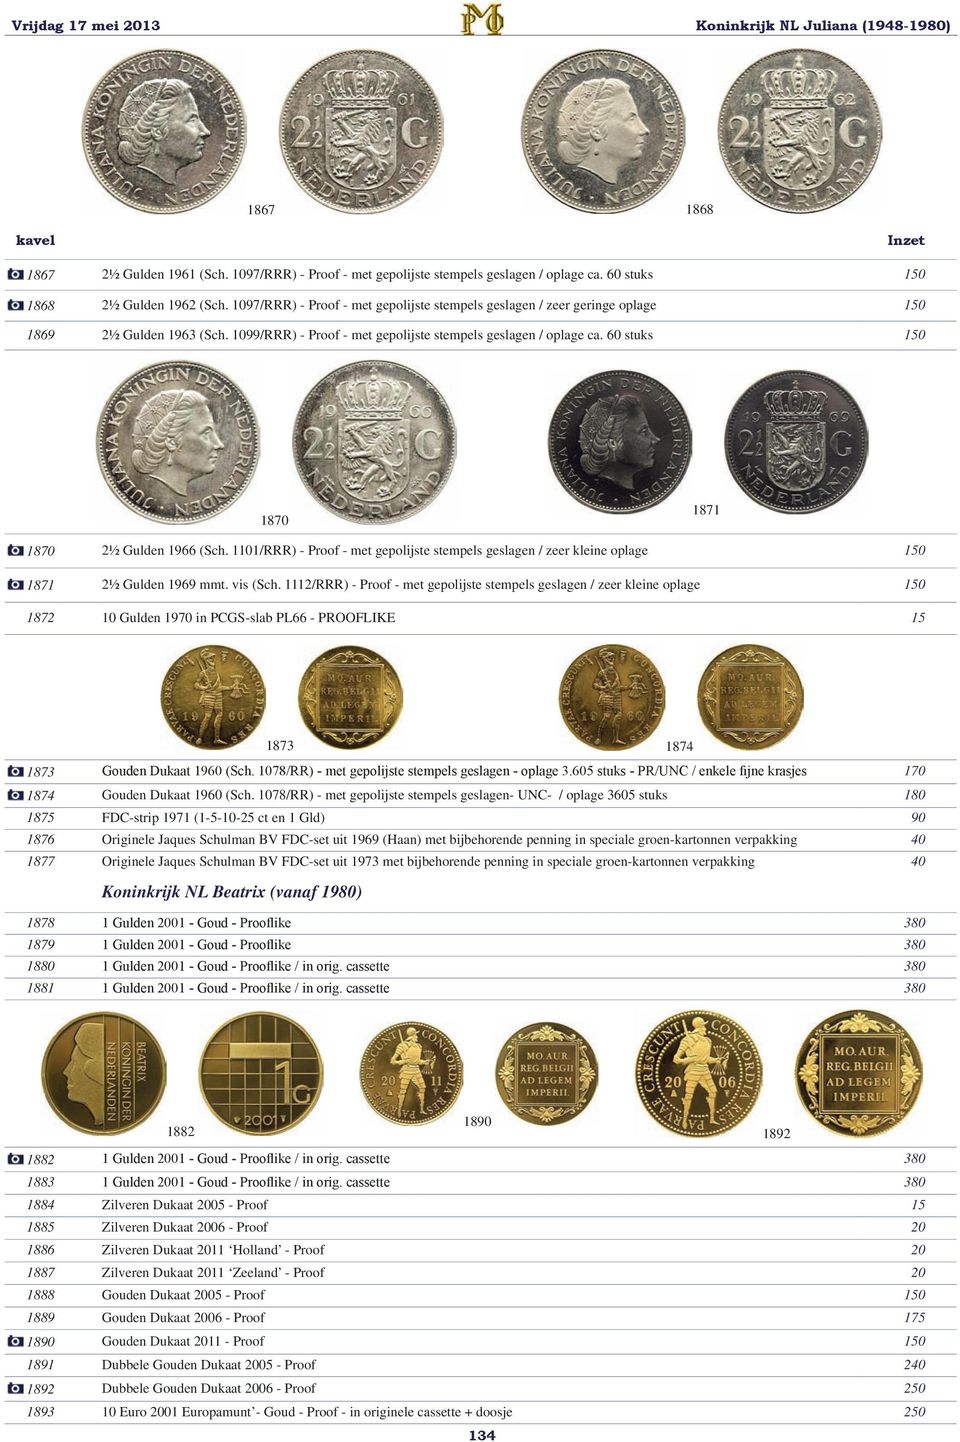 60 stuks 150 1870 1871 1870 2½ Gulden 1966 (Sch. 1101/RRR) - Proof - met gepolijste stempels geslagen / zeer kleine oplage 150 1871 2½ Gulden 1969 mmt. vis (Sch.